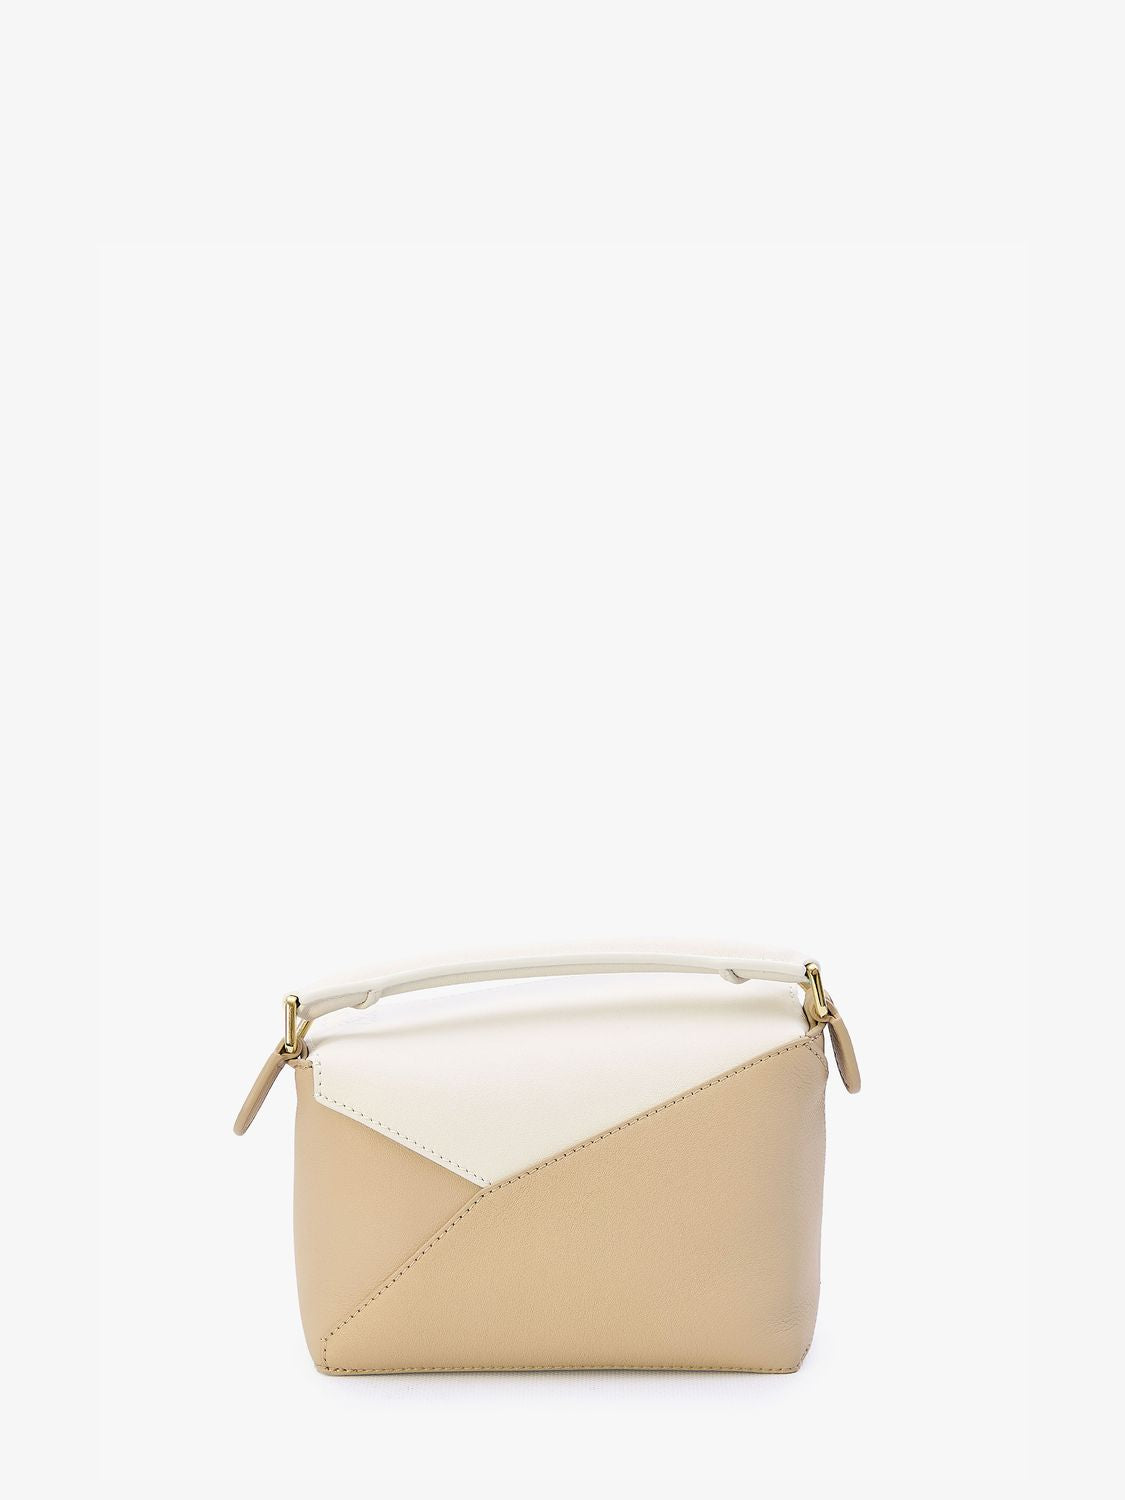 Túi xách nhỏ hình học đẹp tinh tế từ da bê trắng và beige